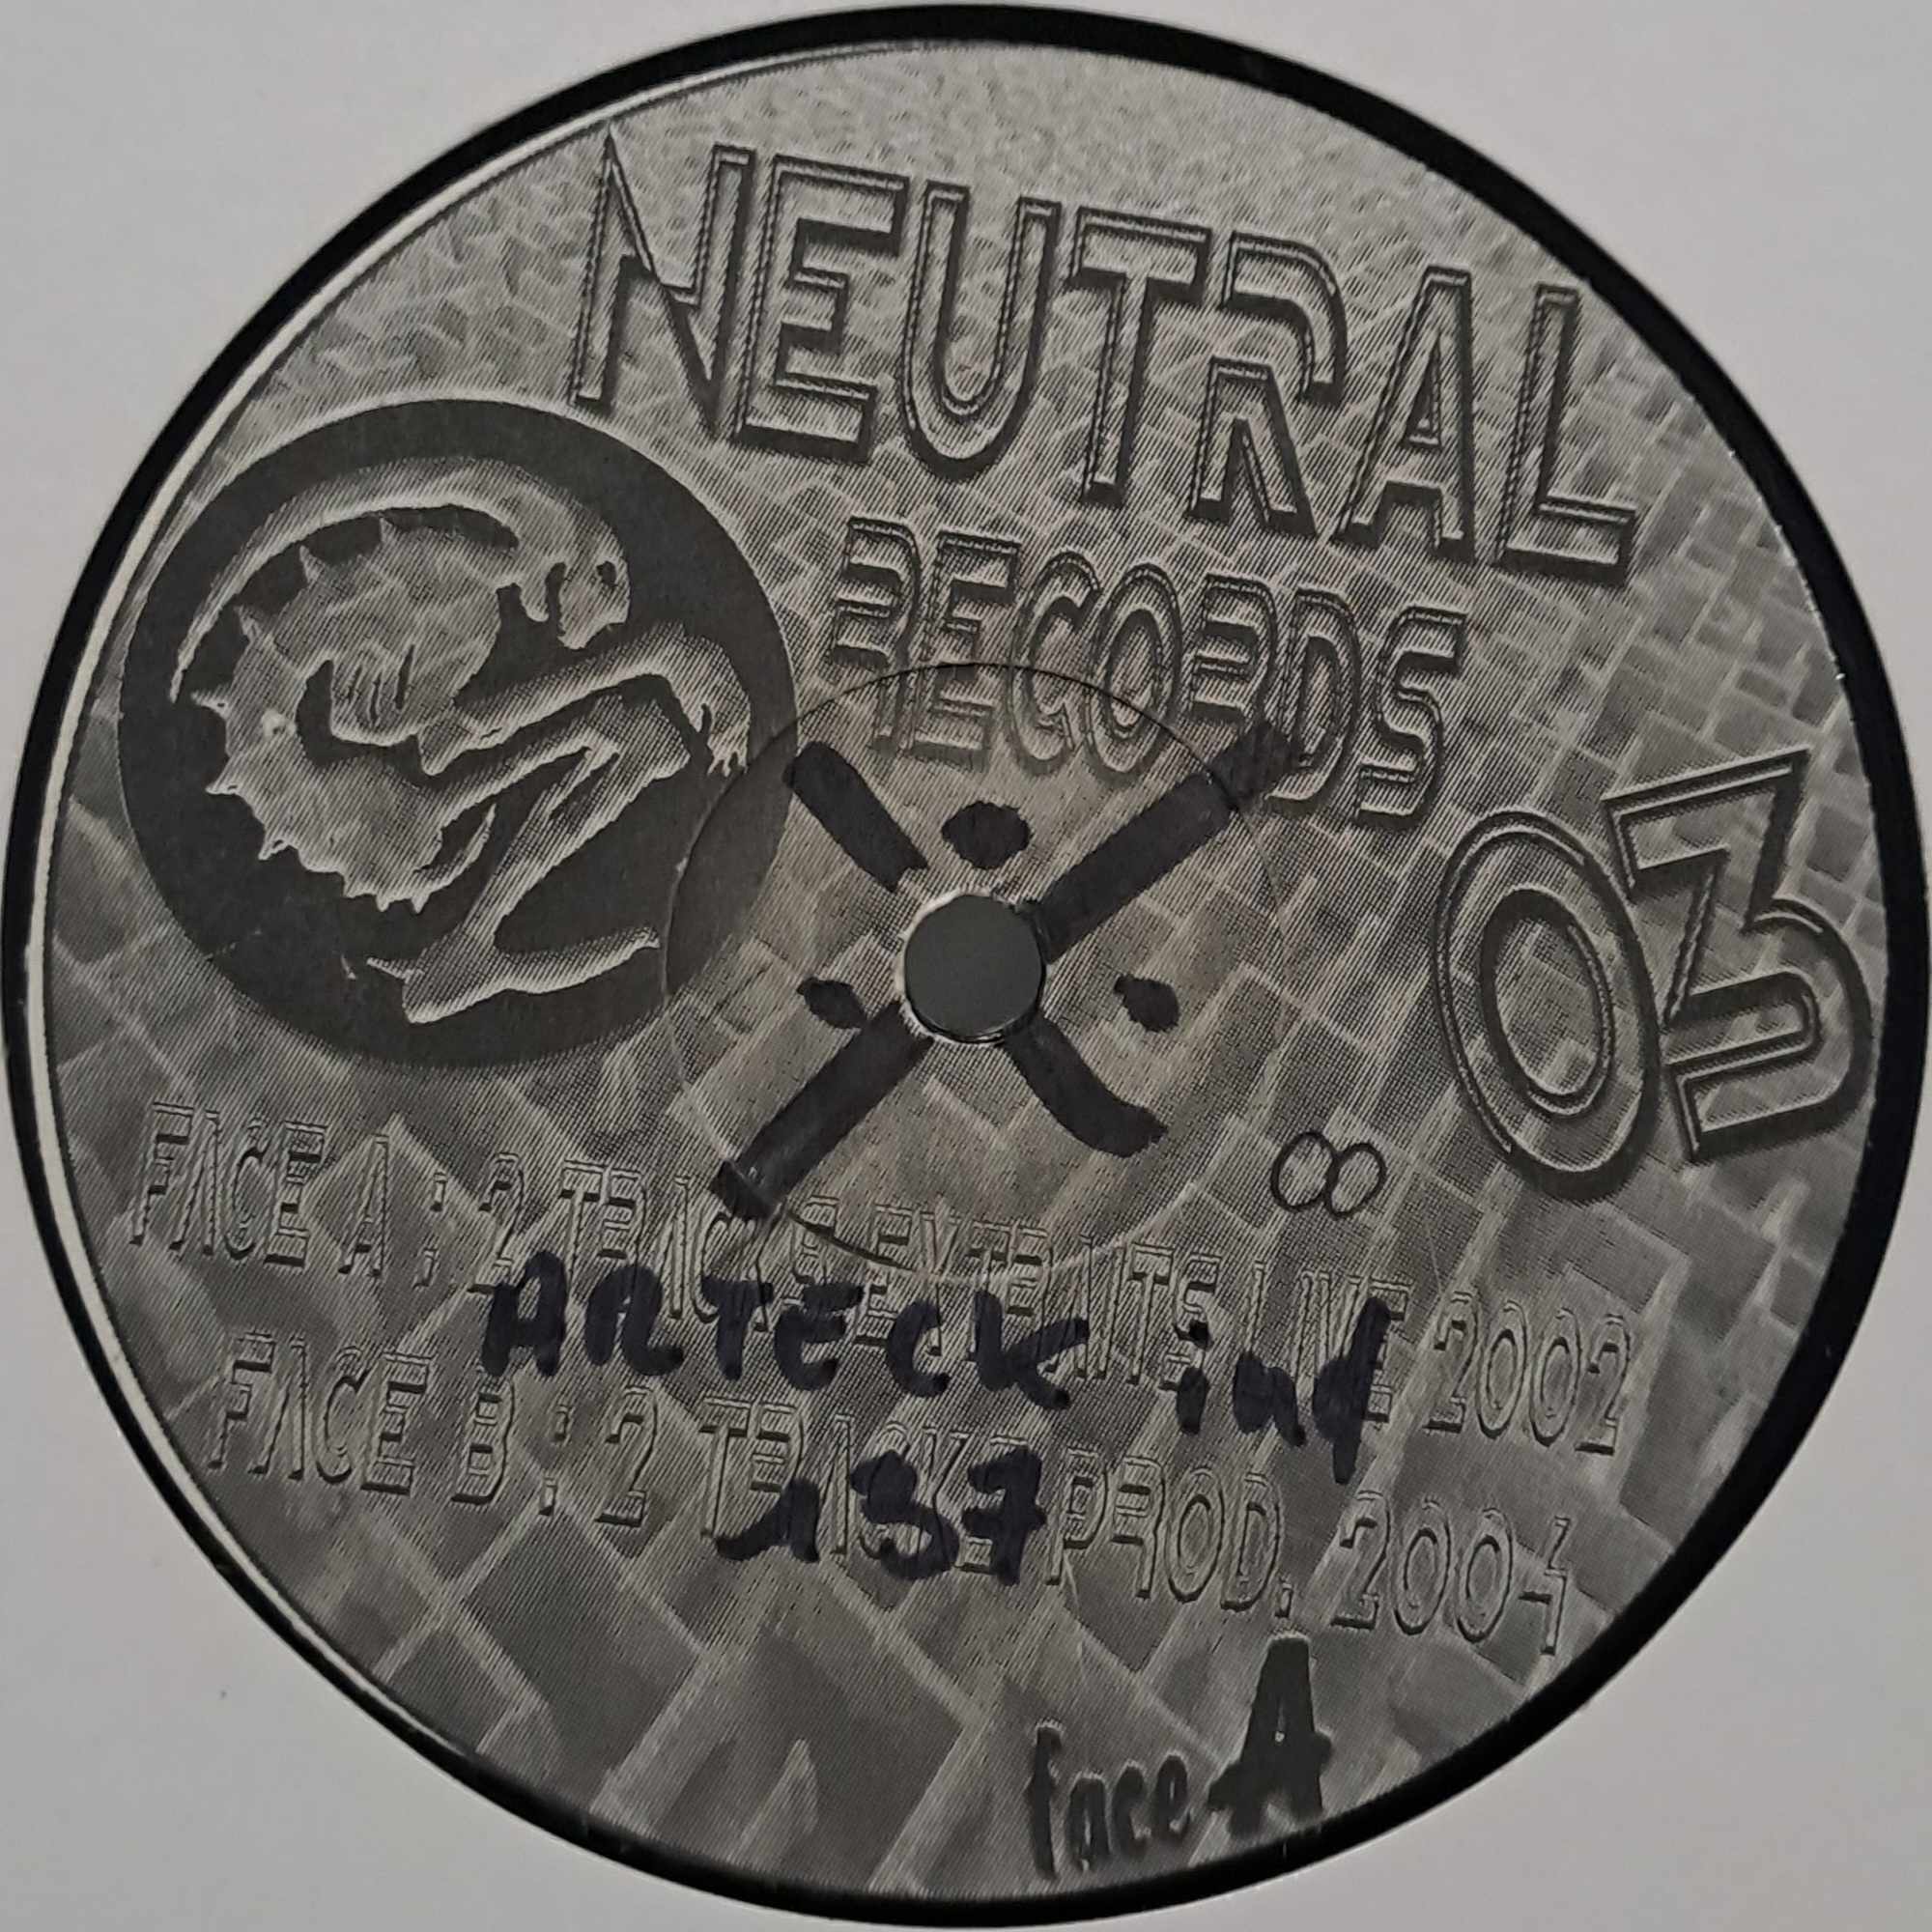 Neutral 03 - vinyle freetekno